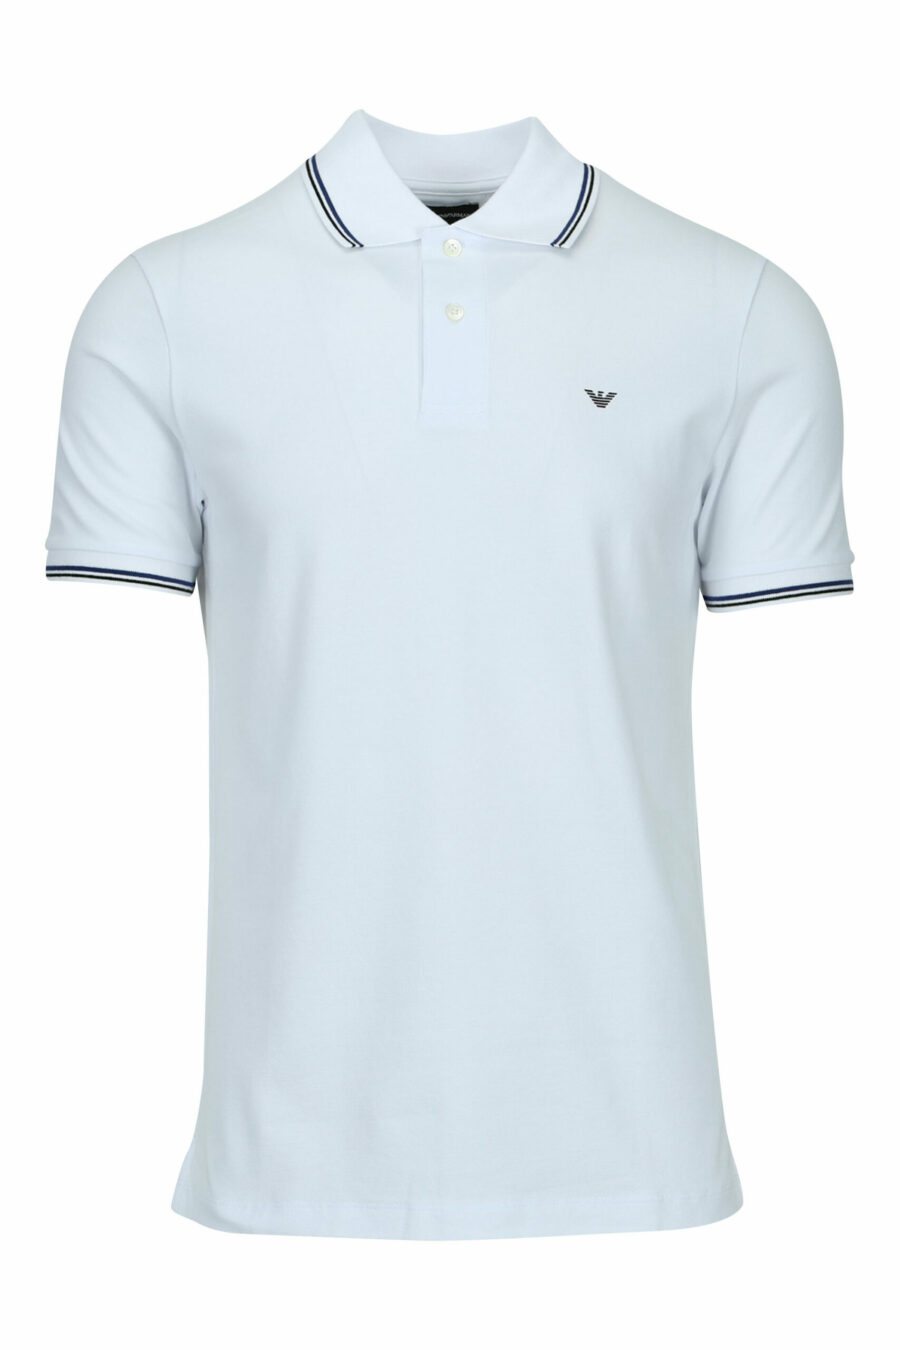 Weißes Strick-Poloshirt mit gestreiftem Kragen und Mini-Adler-Logo - 8056861420442 skaliert